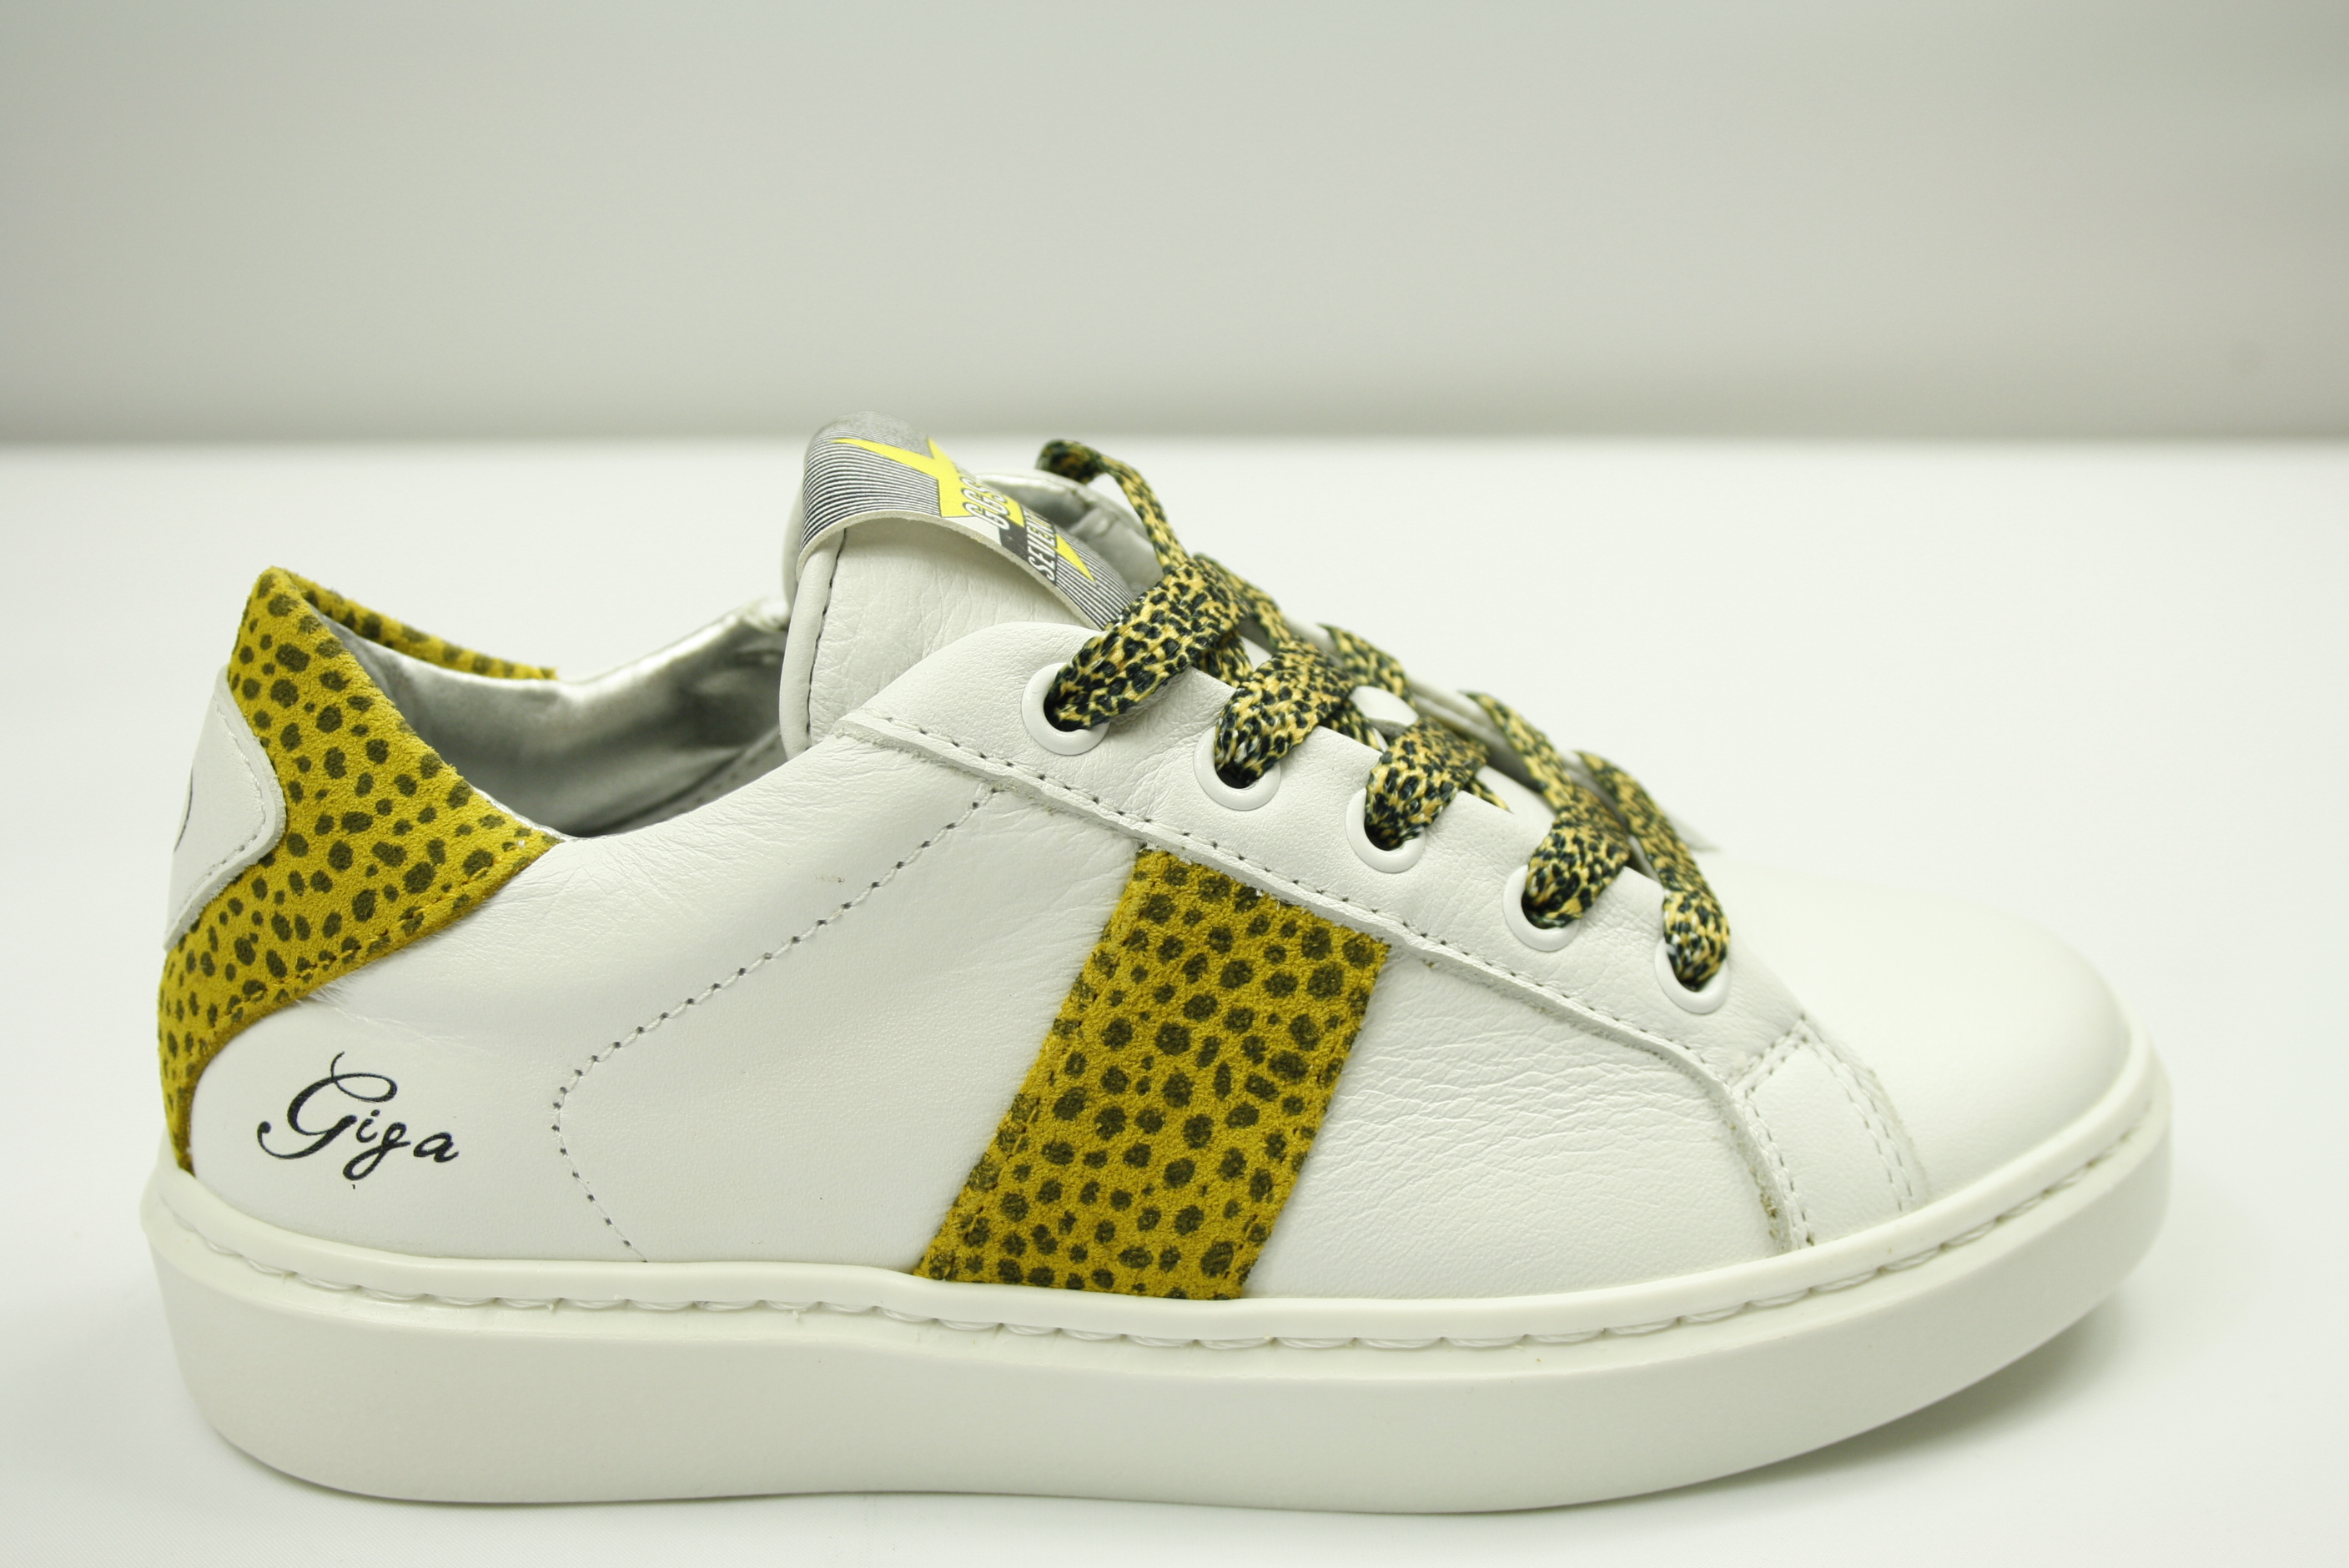 ergens Klein motto De Schoenen van mijn Zus | Giga G3413 smalle meisjes sneaker met rits wit /  geel / panter print . Nieuwe collectie - De Schoenen van mijn Zus